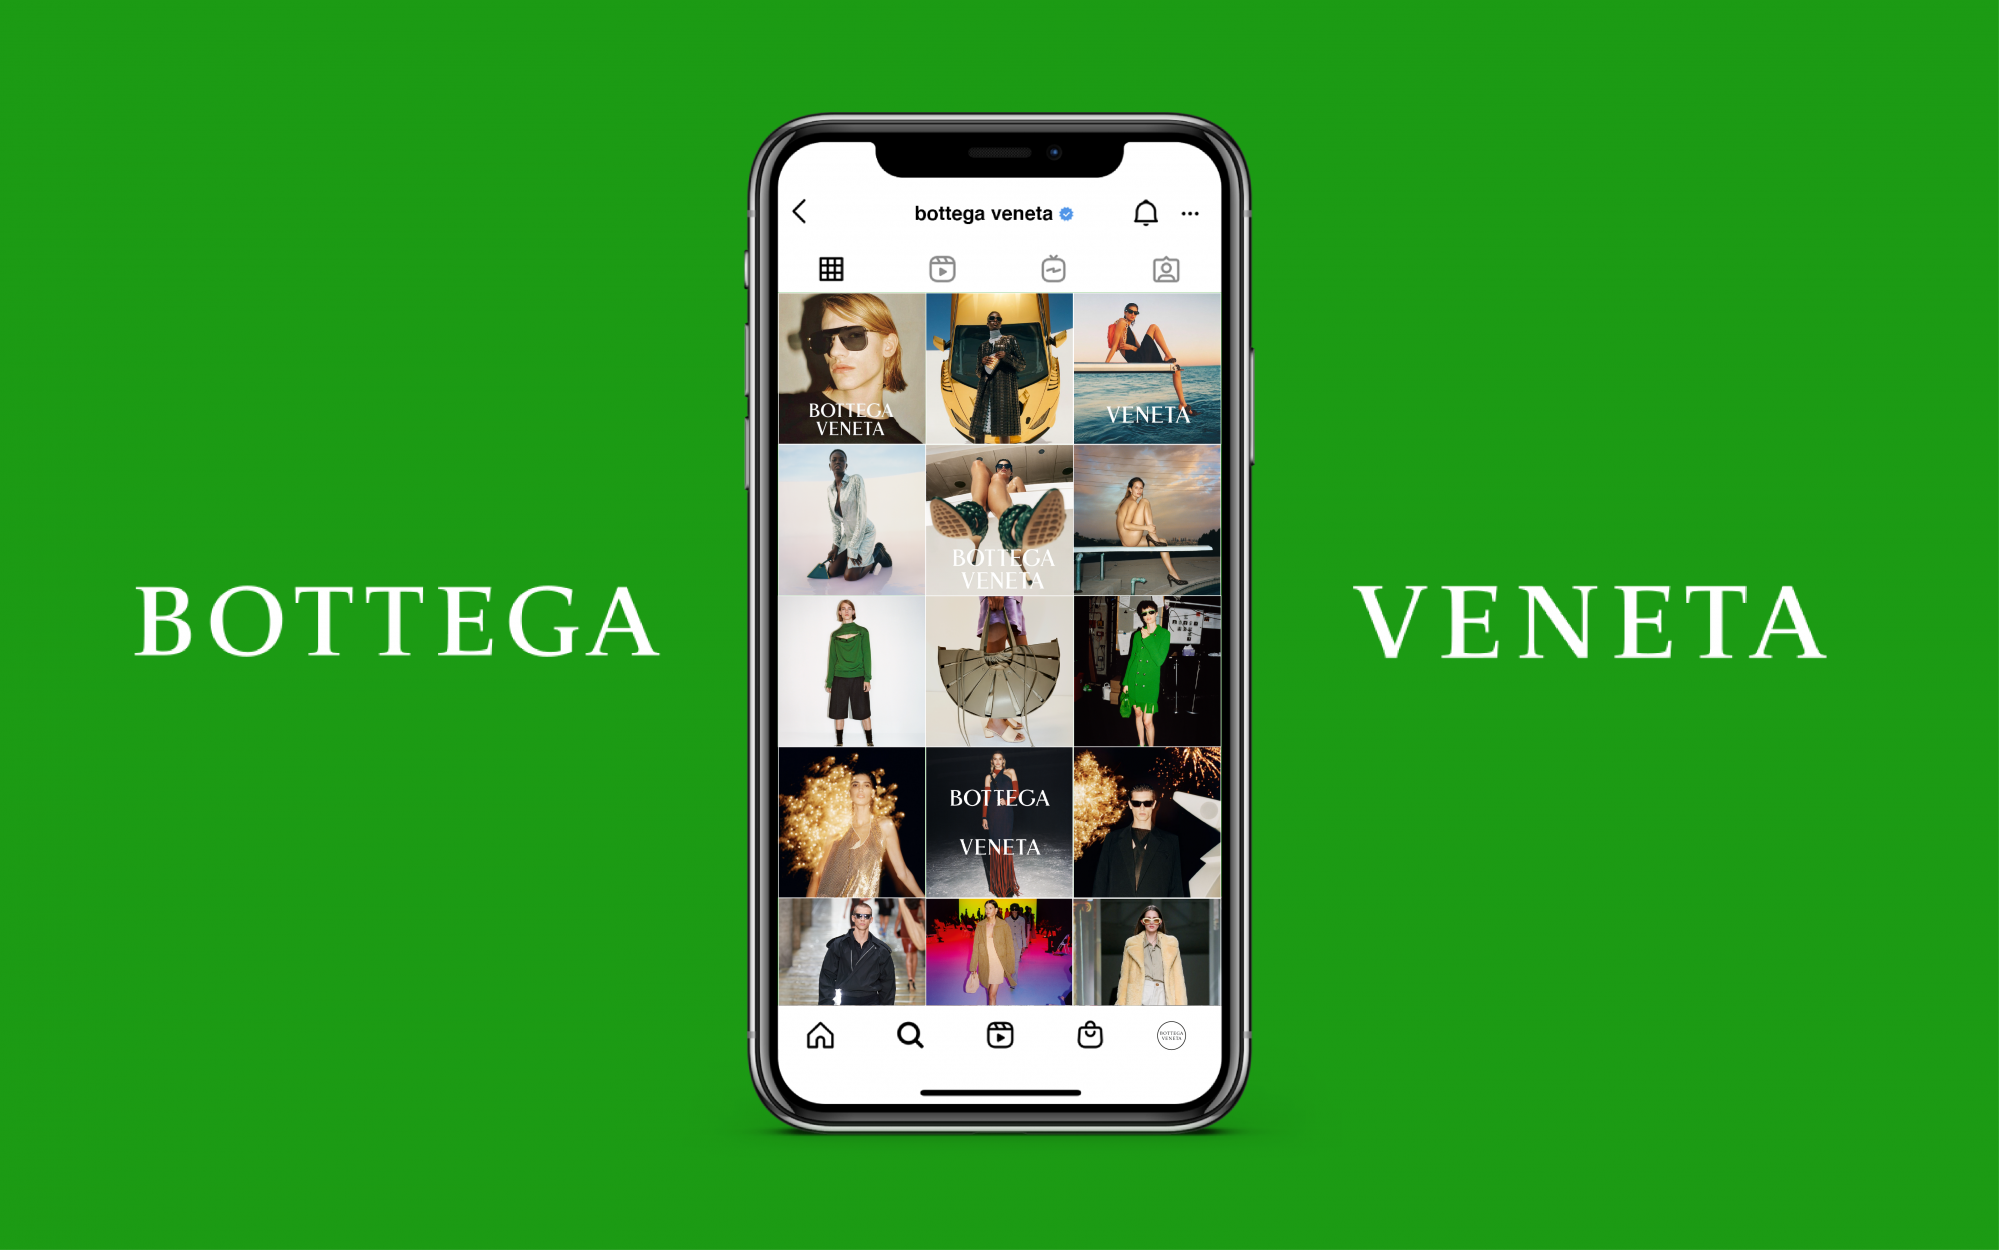 Bottega Veneta Brand - An innovative Italian designer brand - Life